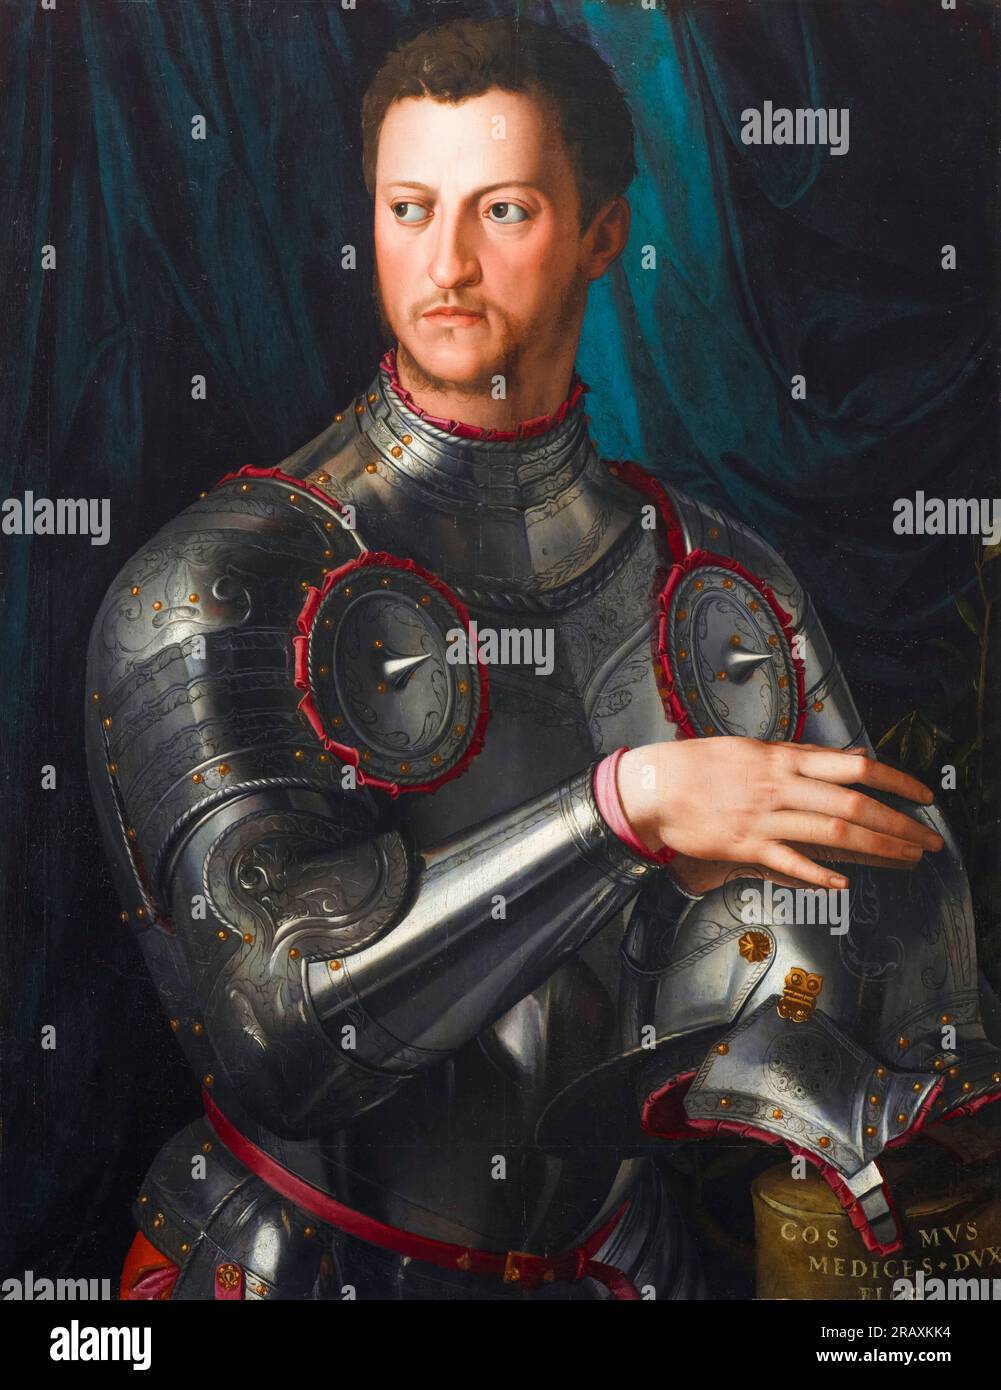 Cosimo i de Medici (1519-1574), secondo duca di Firenze (1537-1569), primo granduca di Toscana (1569-1574), in armatura piena, ritratto dipinto ad olio su tavola di Agnolo Bronzino, circa 1545 Foto Stock